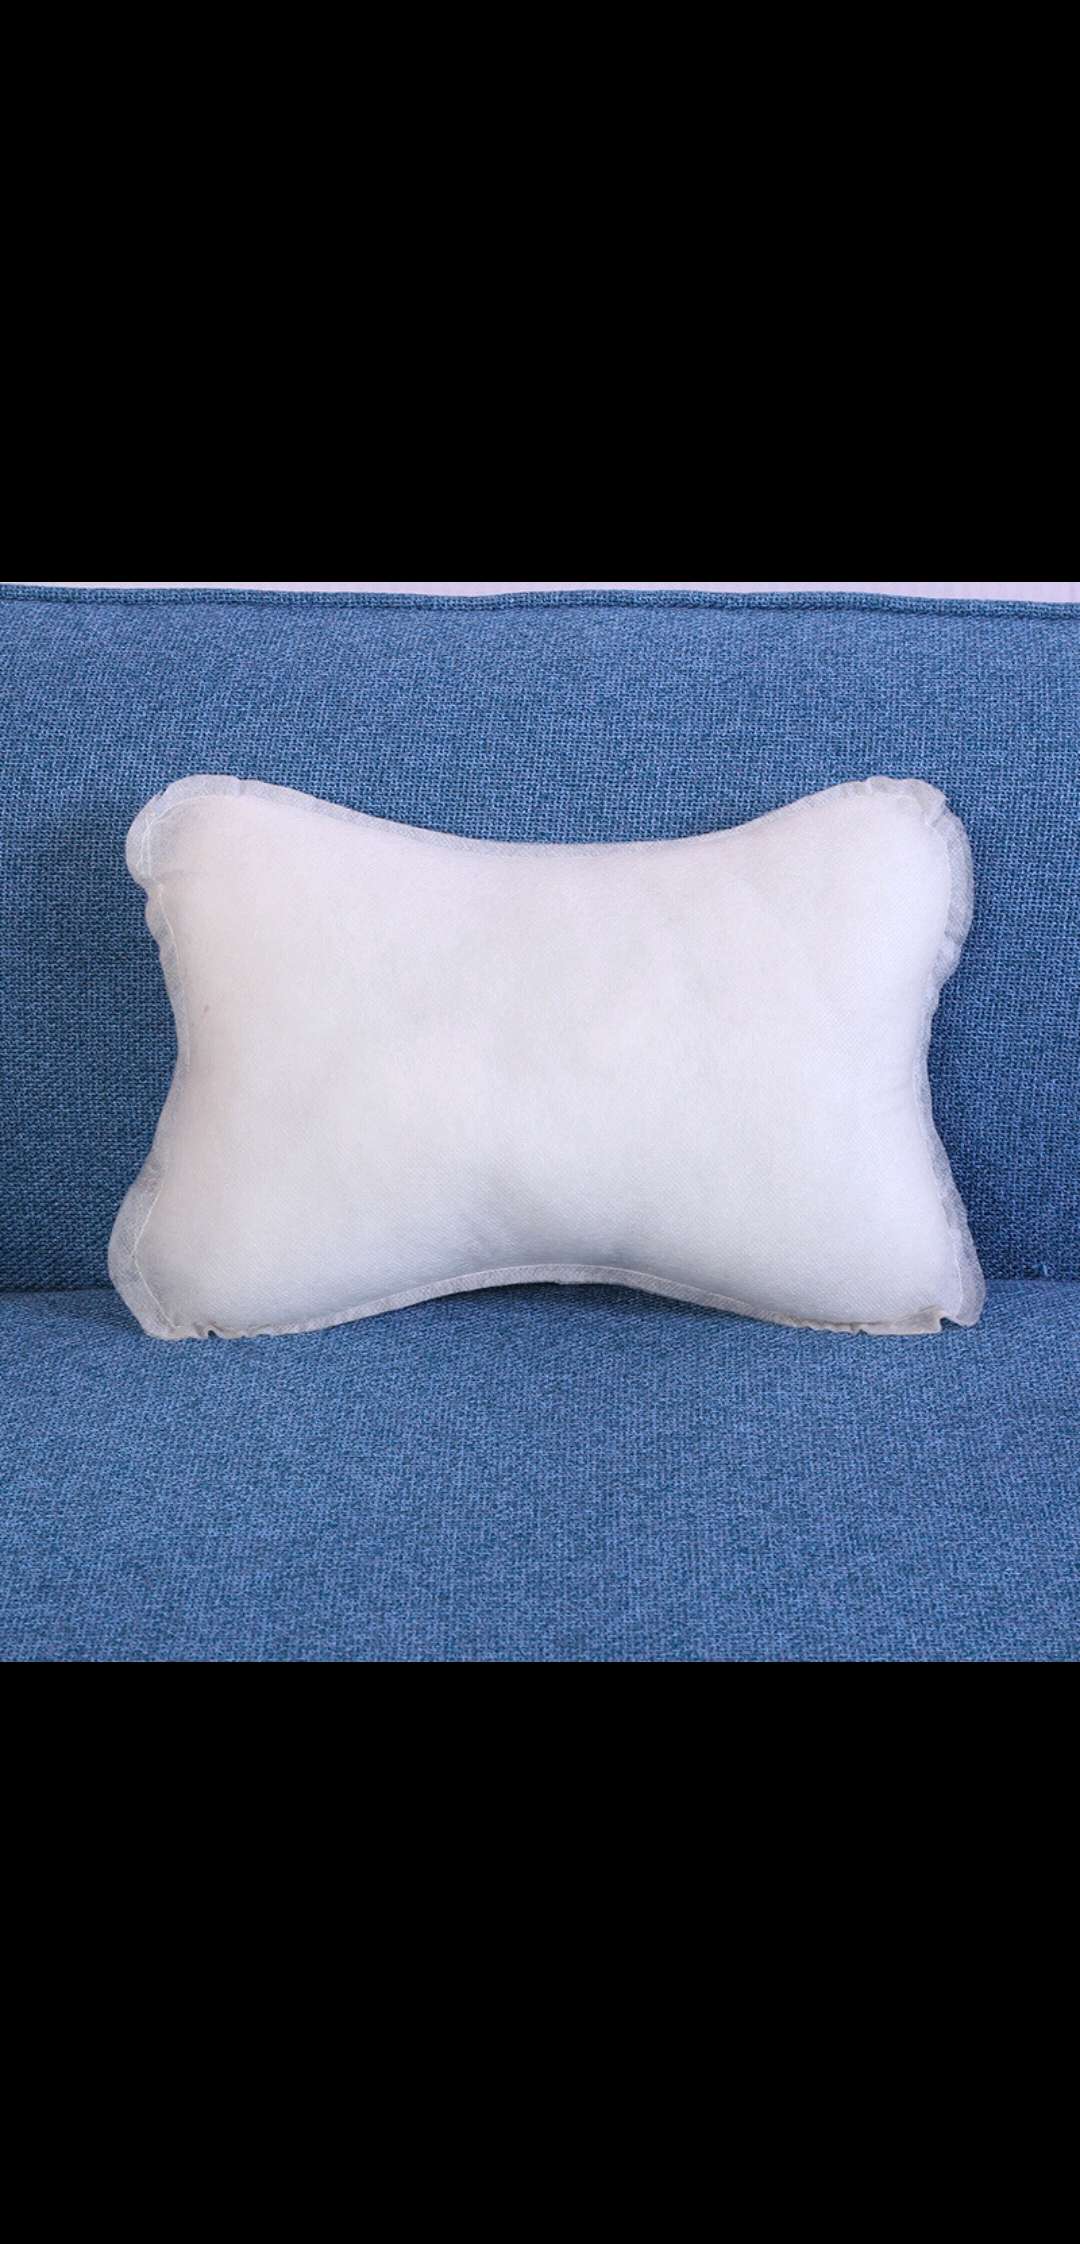 厂家直销无纺布骨头枕抱枕靠垫枕芯爆款一件代发童枕详情图2